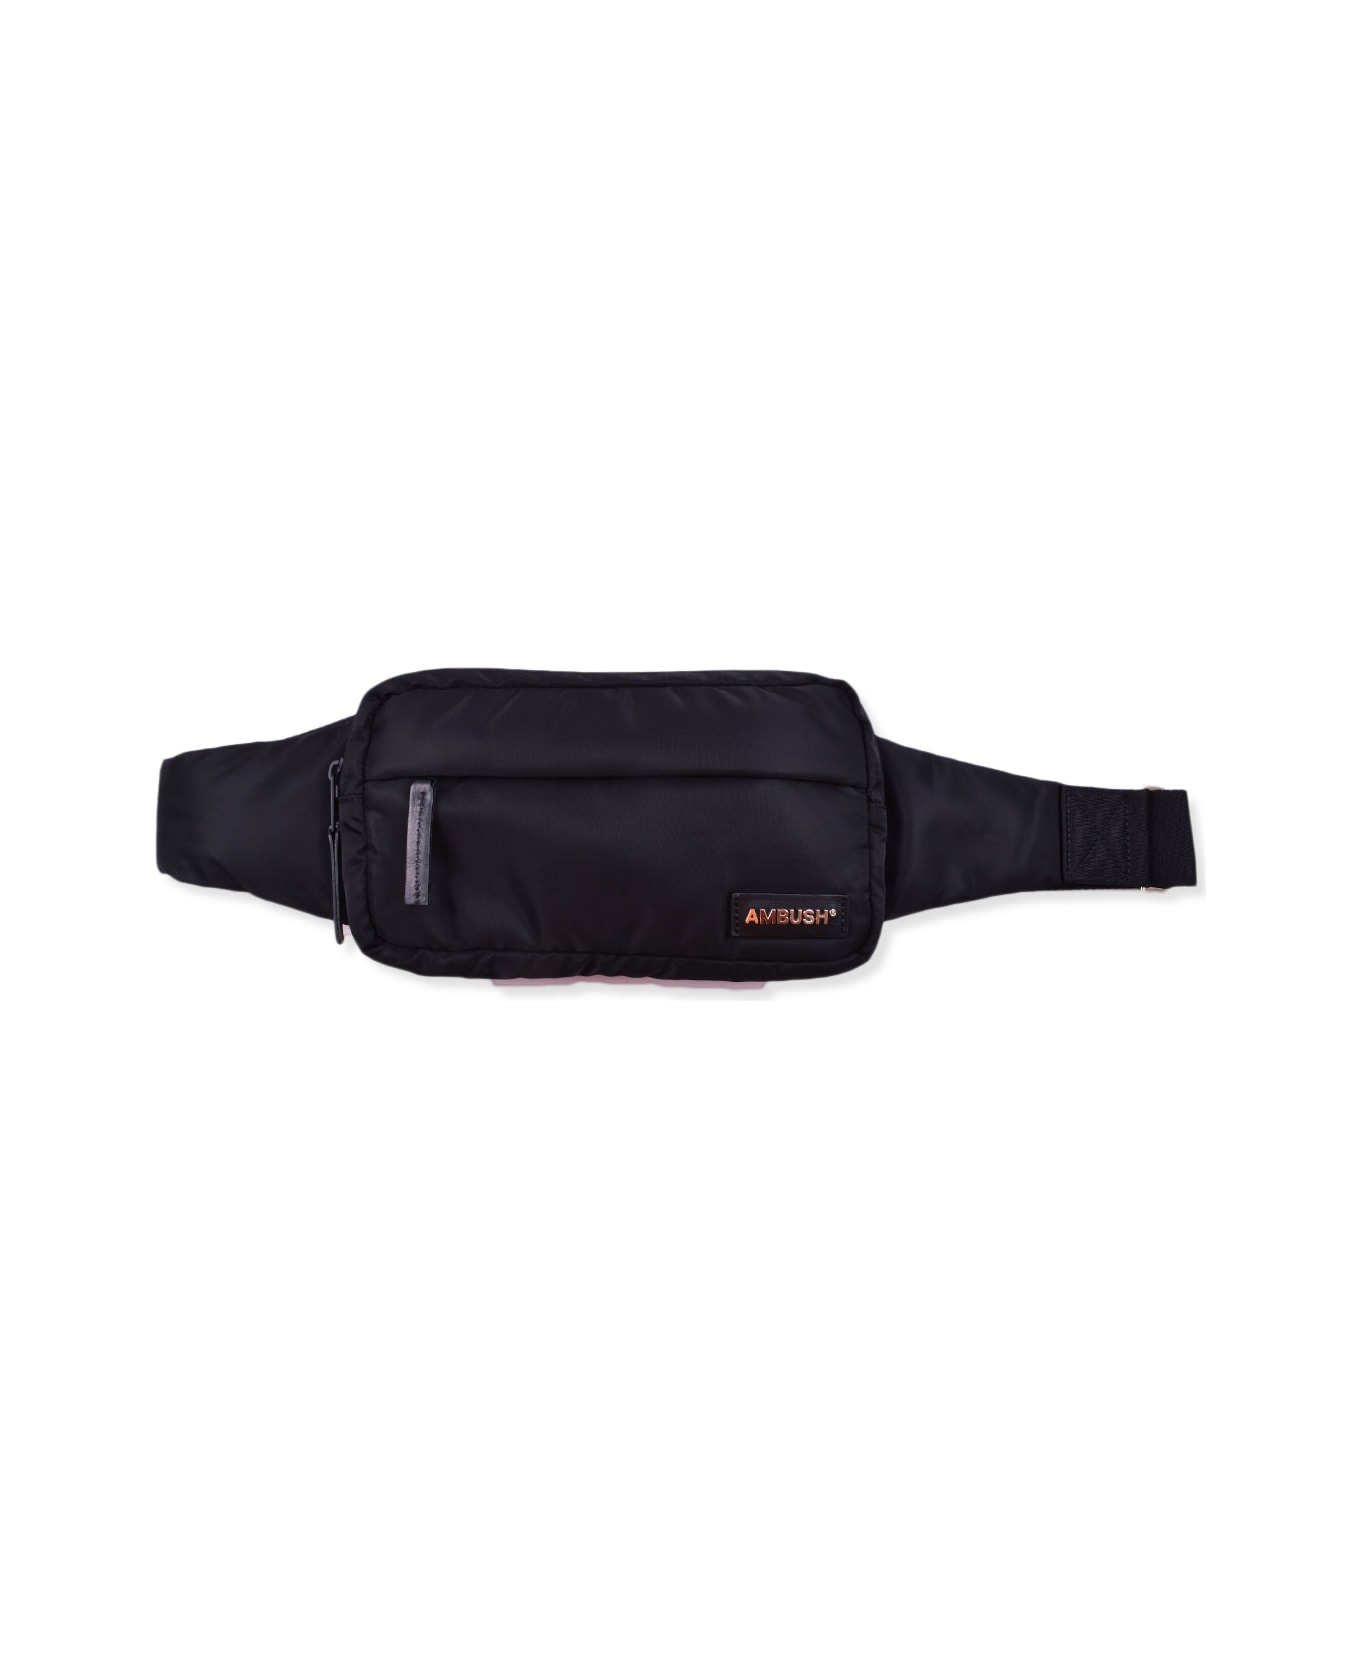 AMBUSH Nylon Belt Bag - Black